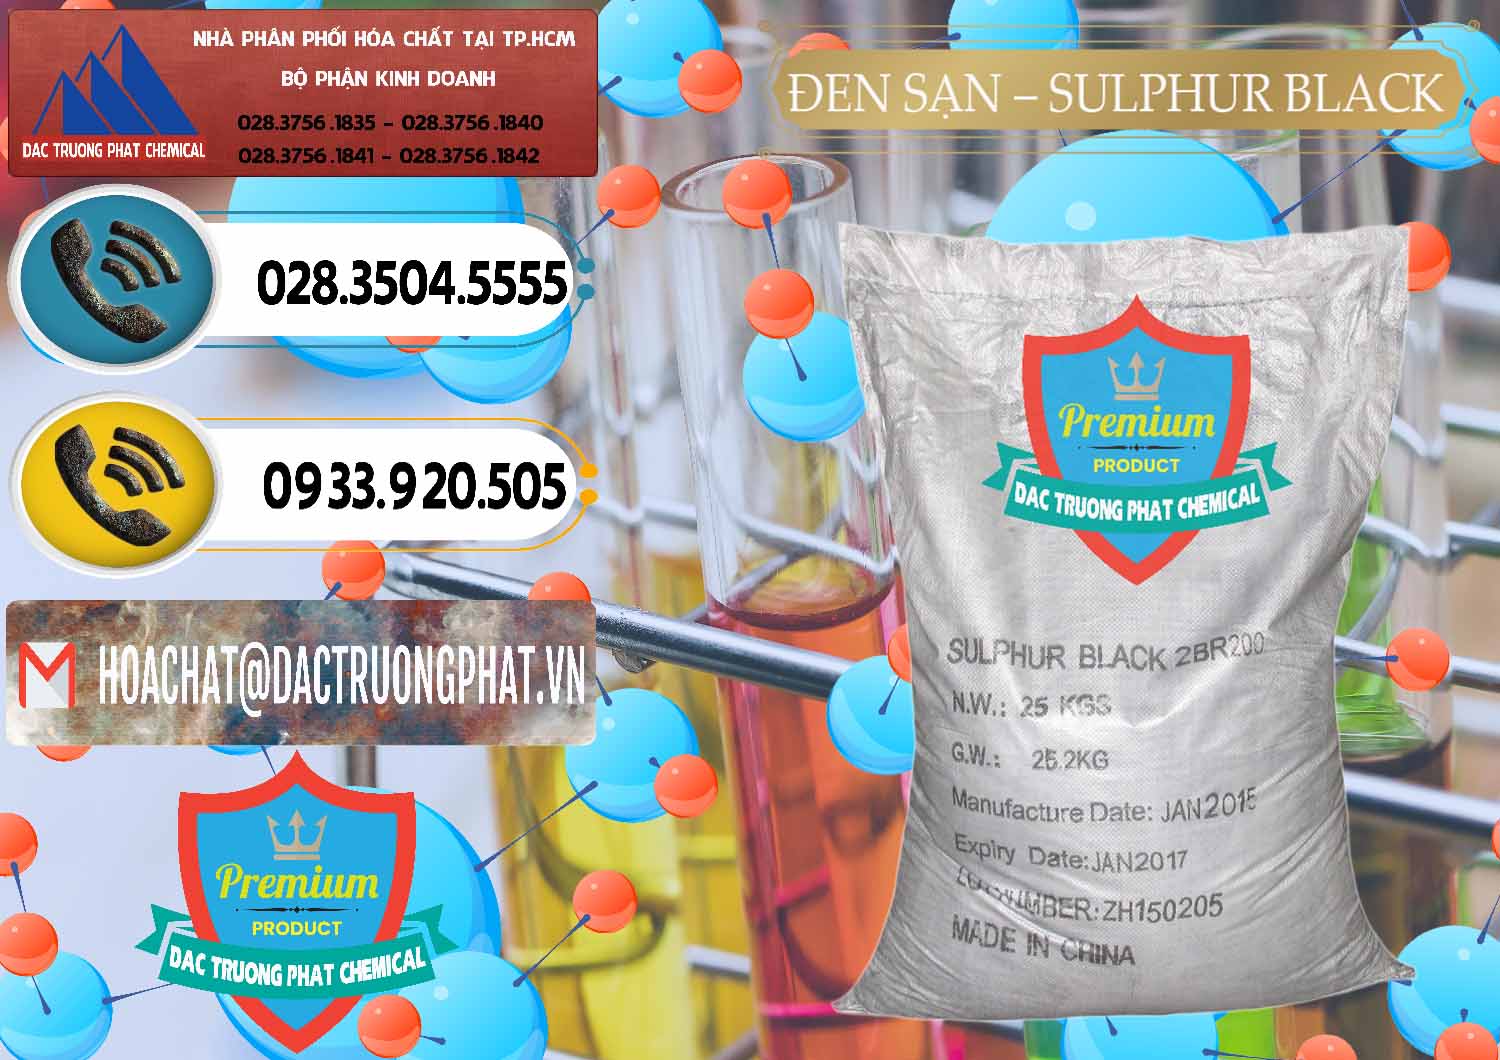 Chuyên bán _ cung cấp Đen Sạn – Sulphur Black Trung Quốc China - 0062 - Công ty chuyên nhập khẩu ( phân phối ) hóa chất tại TP.HCM - hoachatdetnhuom.vn